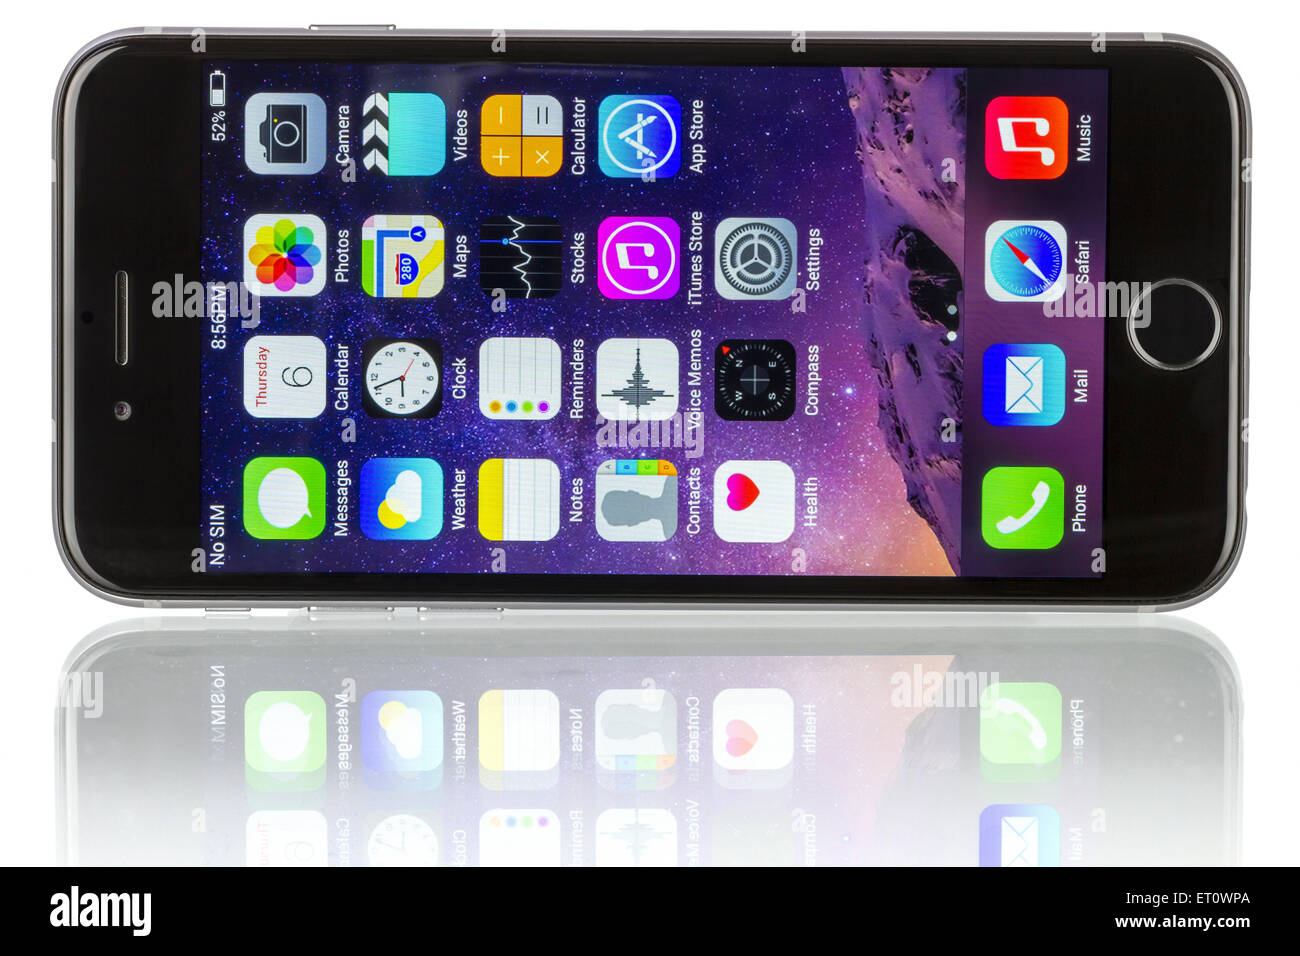 Galati, Romania - 6 Novembre 2014: Spazio Apple grigio iPhone 6 che mostra la schermata iniziale con iOS 8. Foto Stock